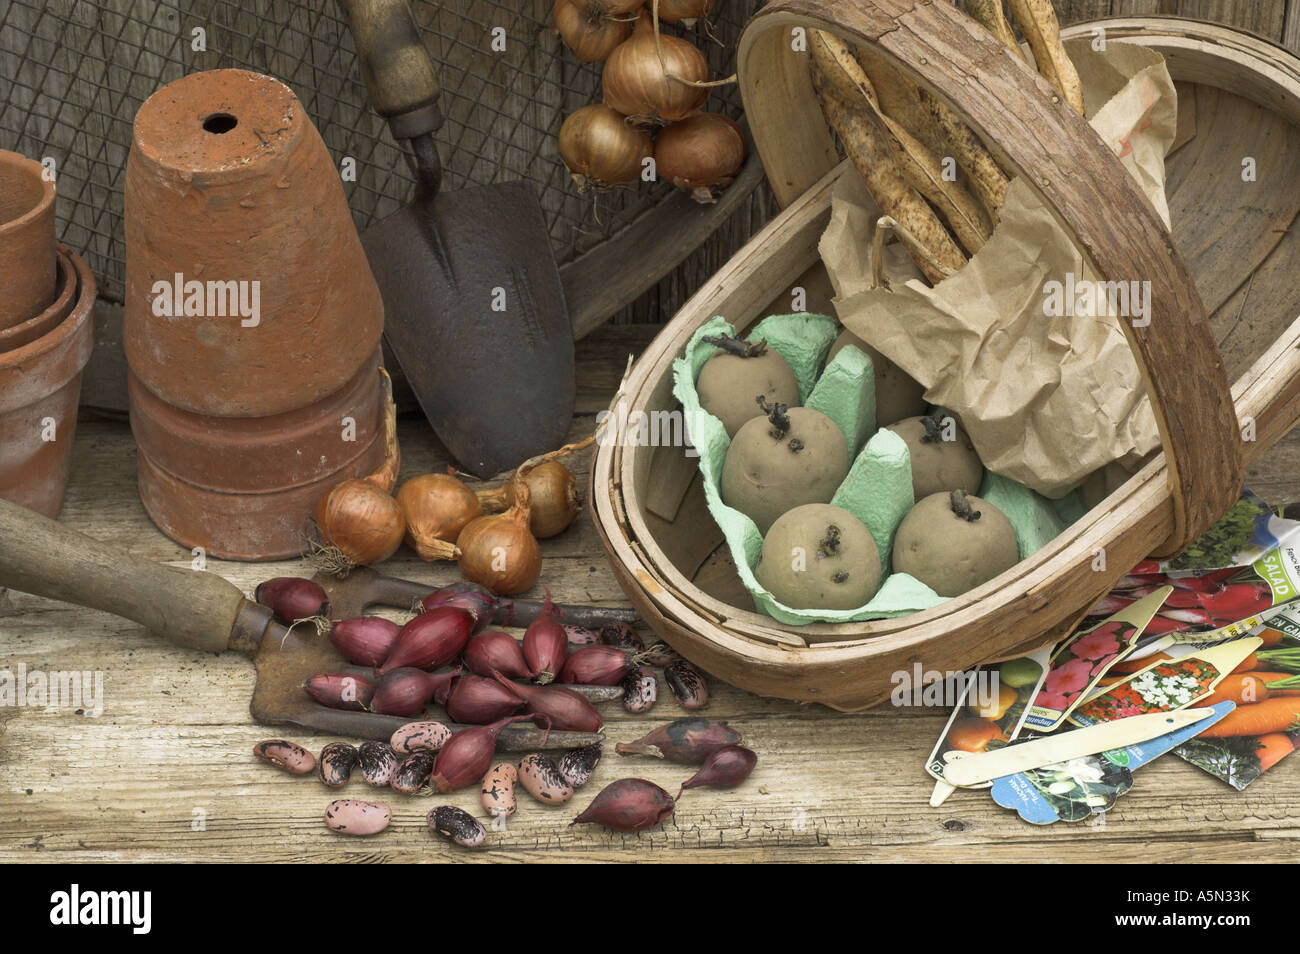 Potting Shed rústico bodegón con herramientas de jardín conjuntos de Cebollas Chalotes habichuela y semilla de papa Foto de stock